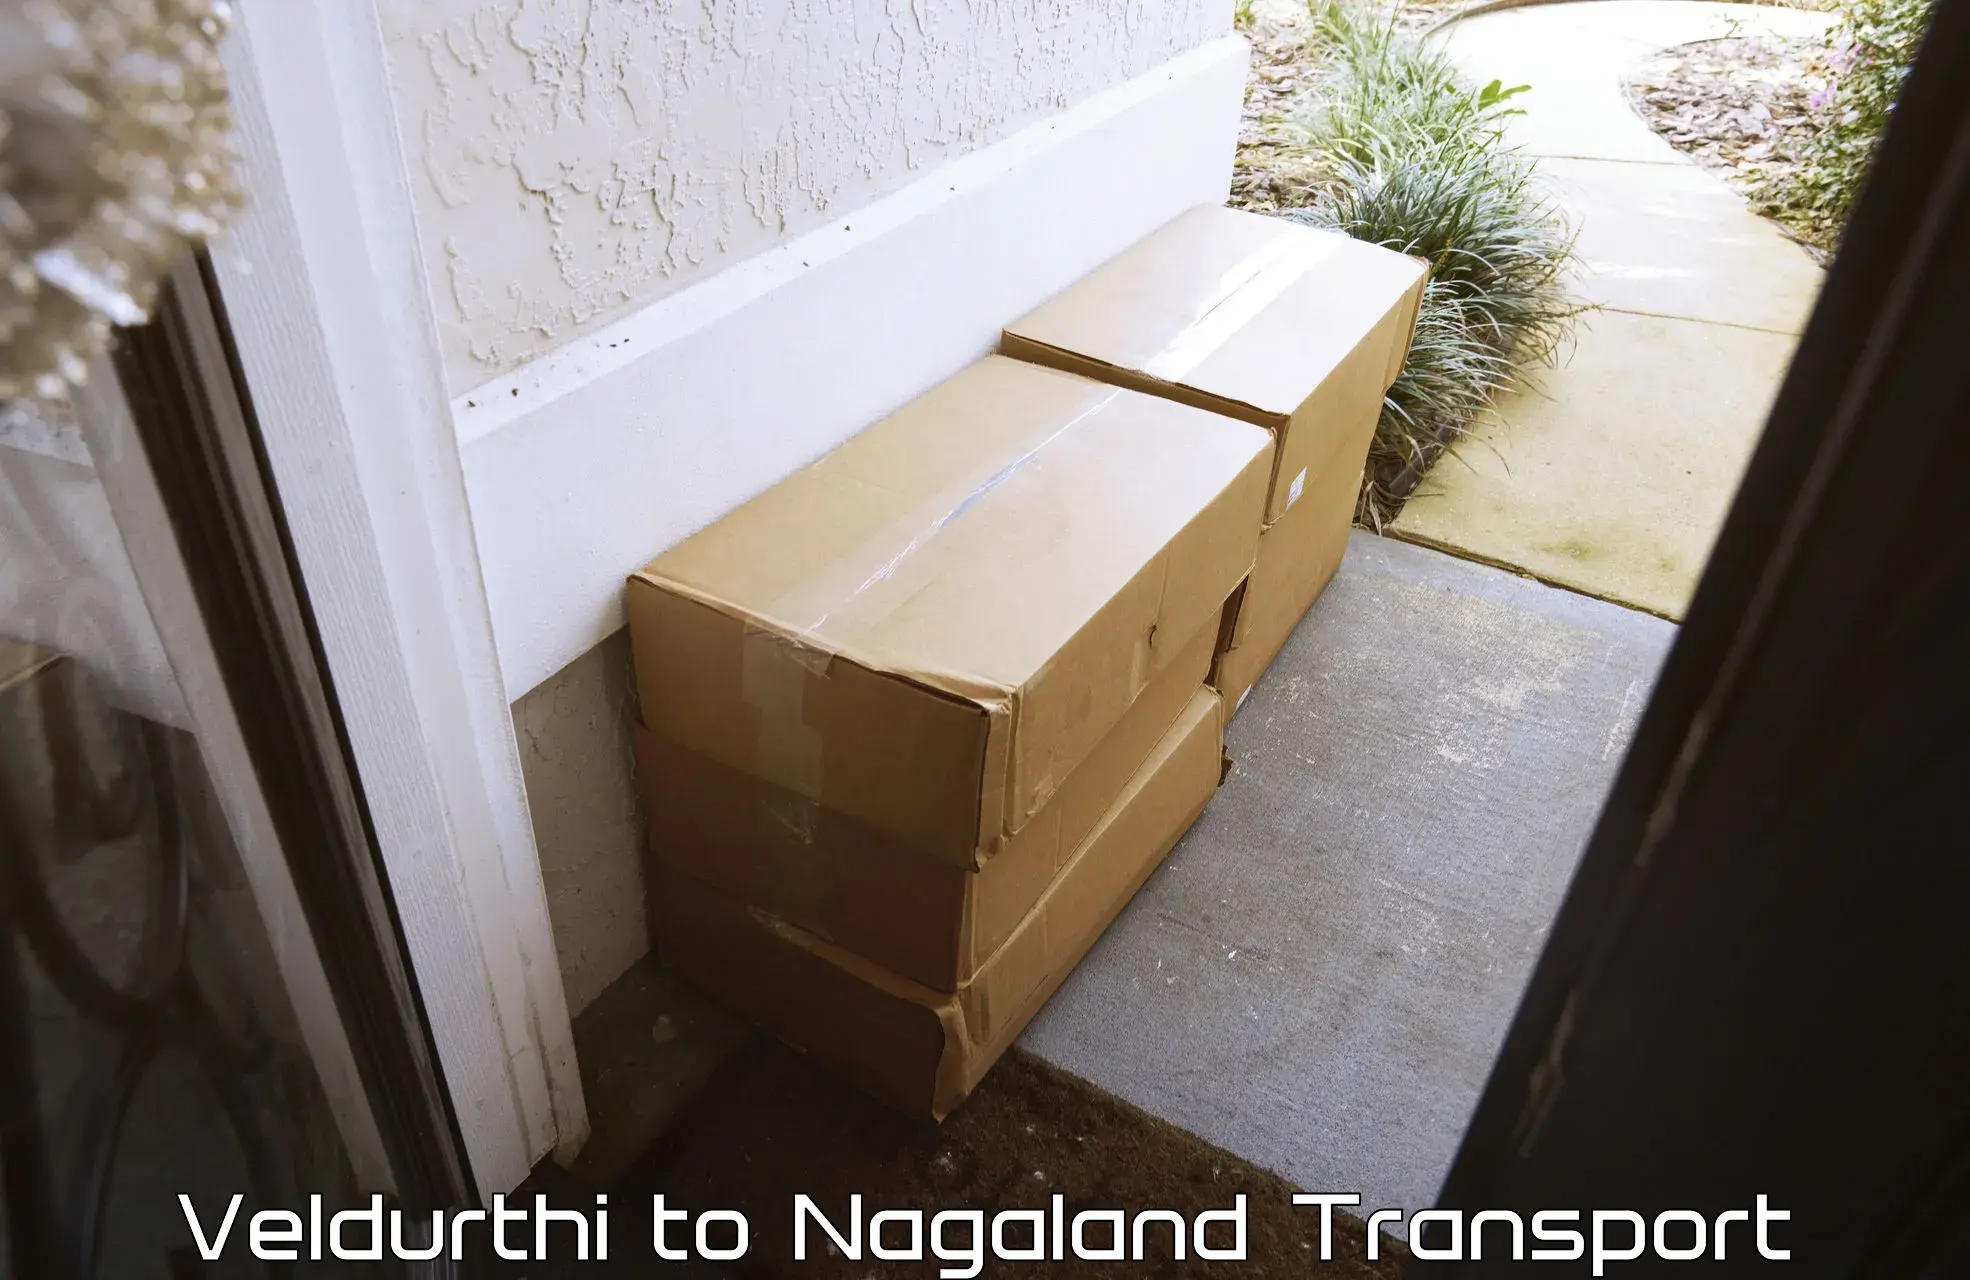 Lorry transport service Veldurthi to Nagaland